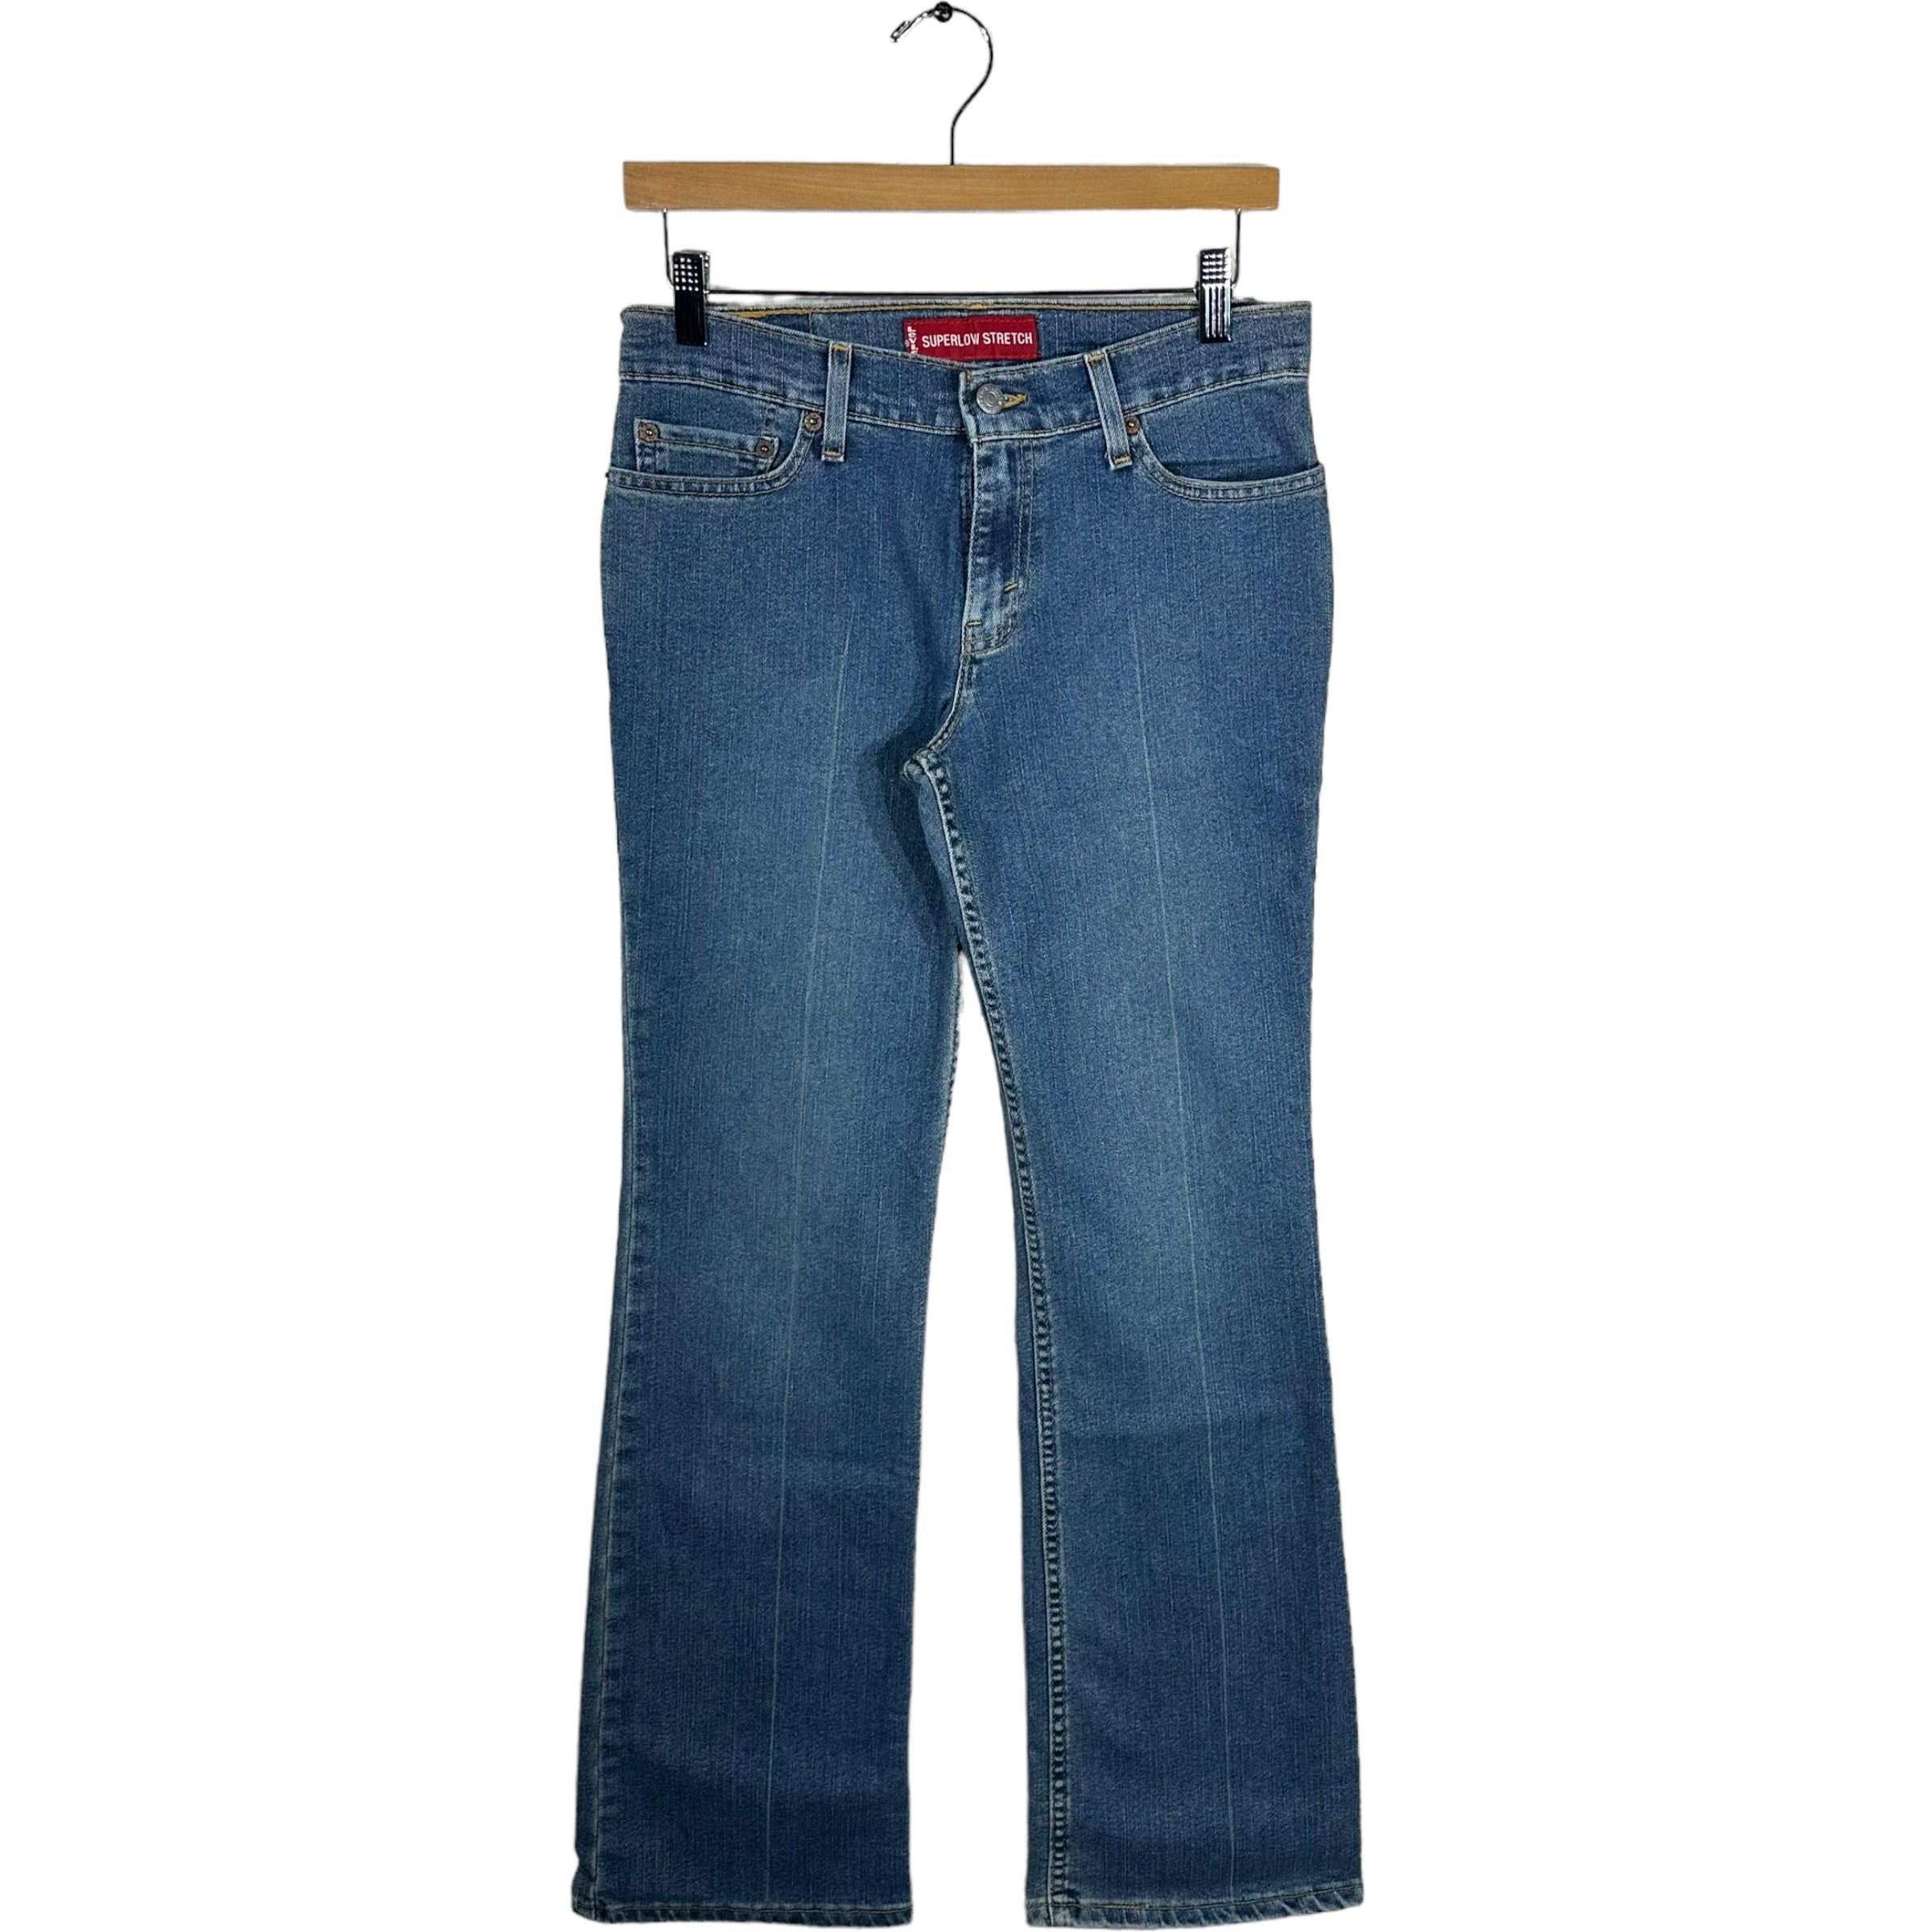 Vintage Levi's 518 Jeans